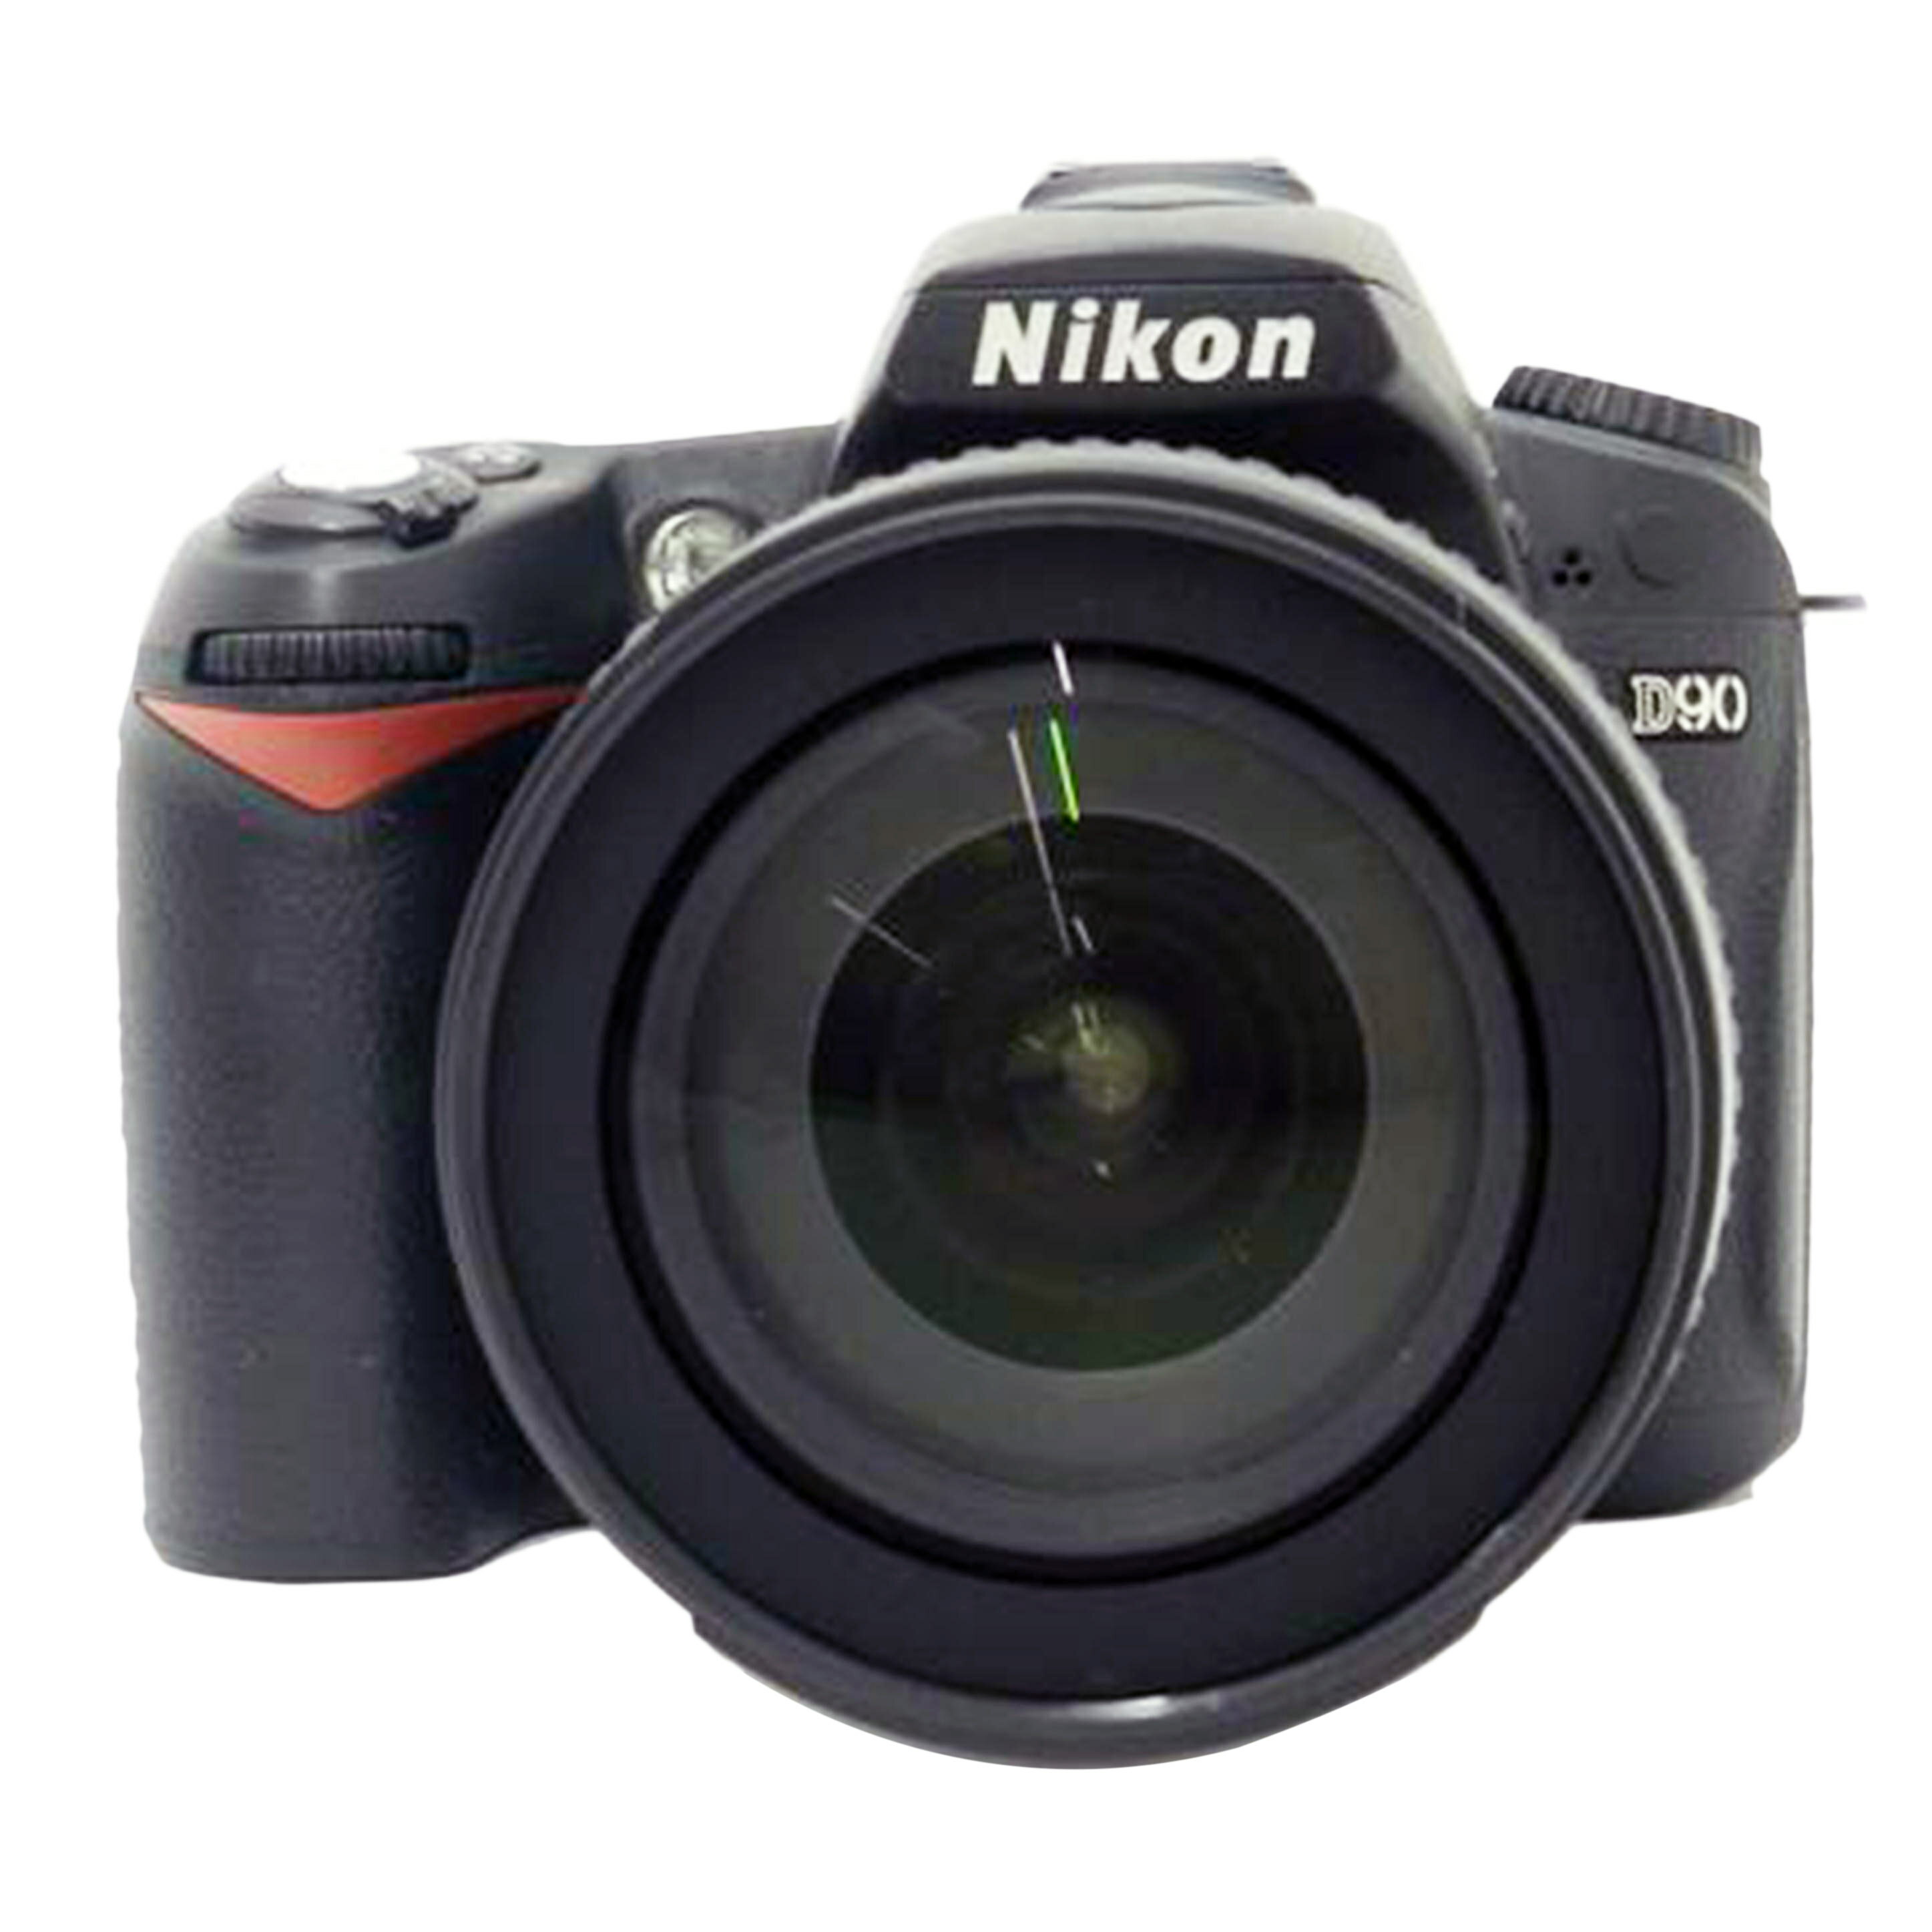 Nikon ニコン/デジタル一眼レンズキット/D90/2075256/Bランク/69【中古】